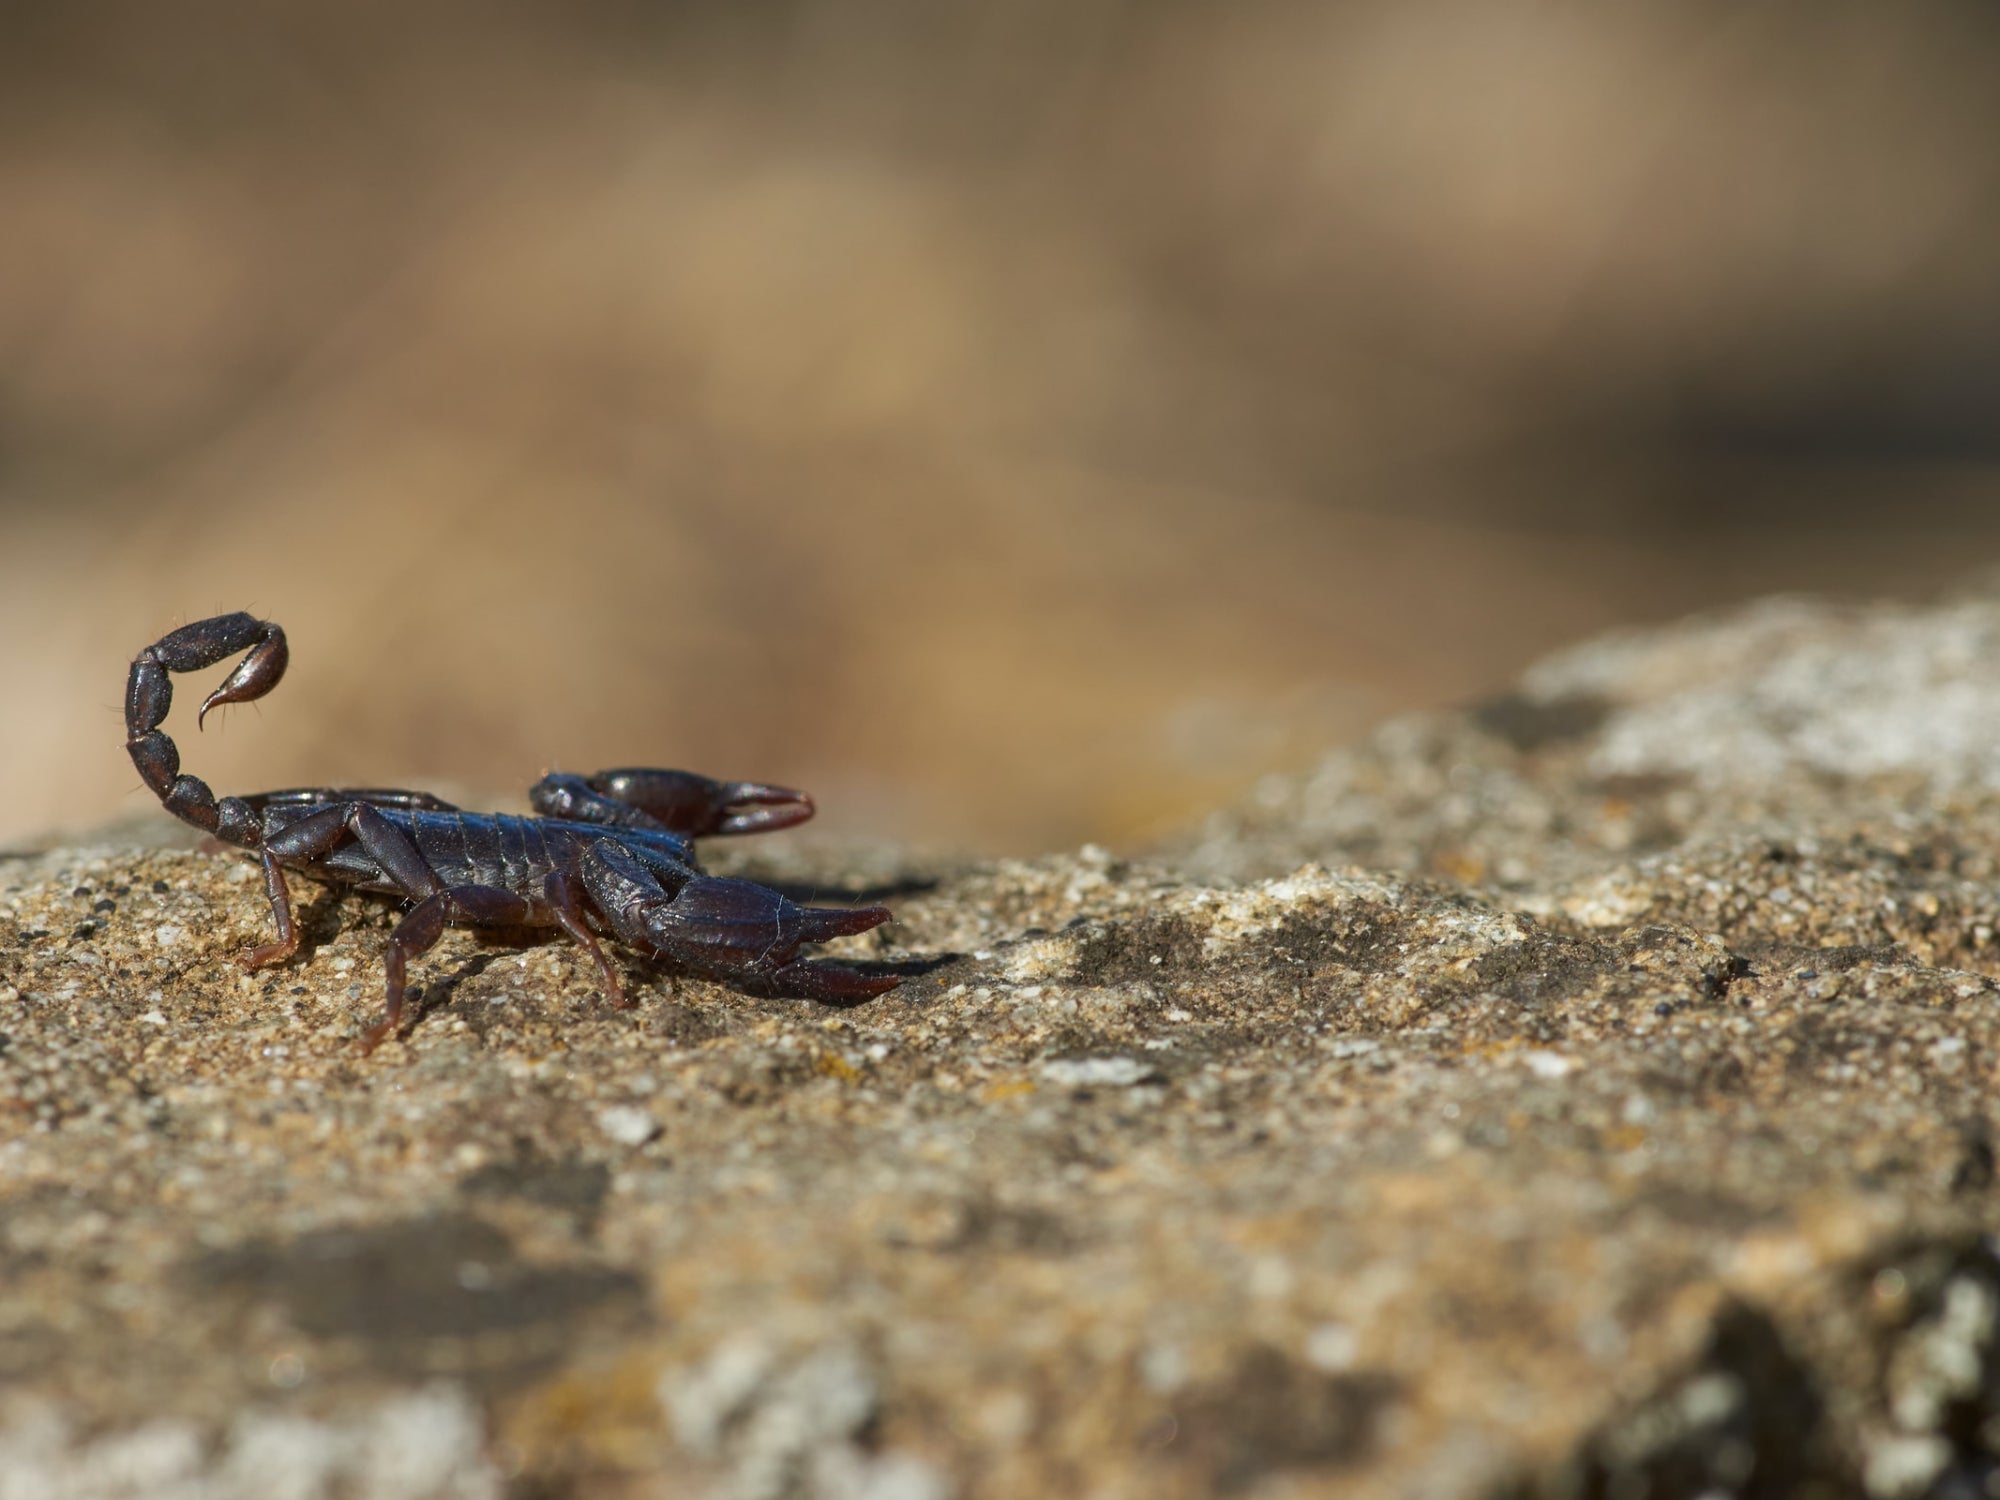 New scorpion species found in Ariz.